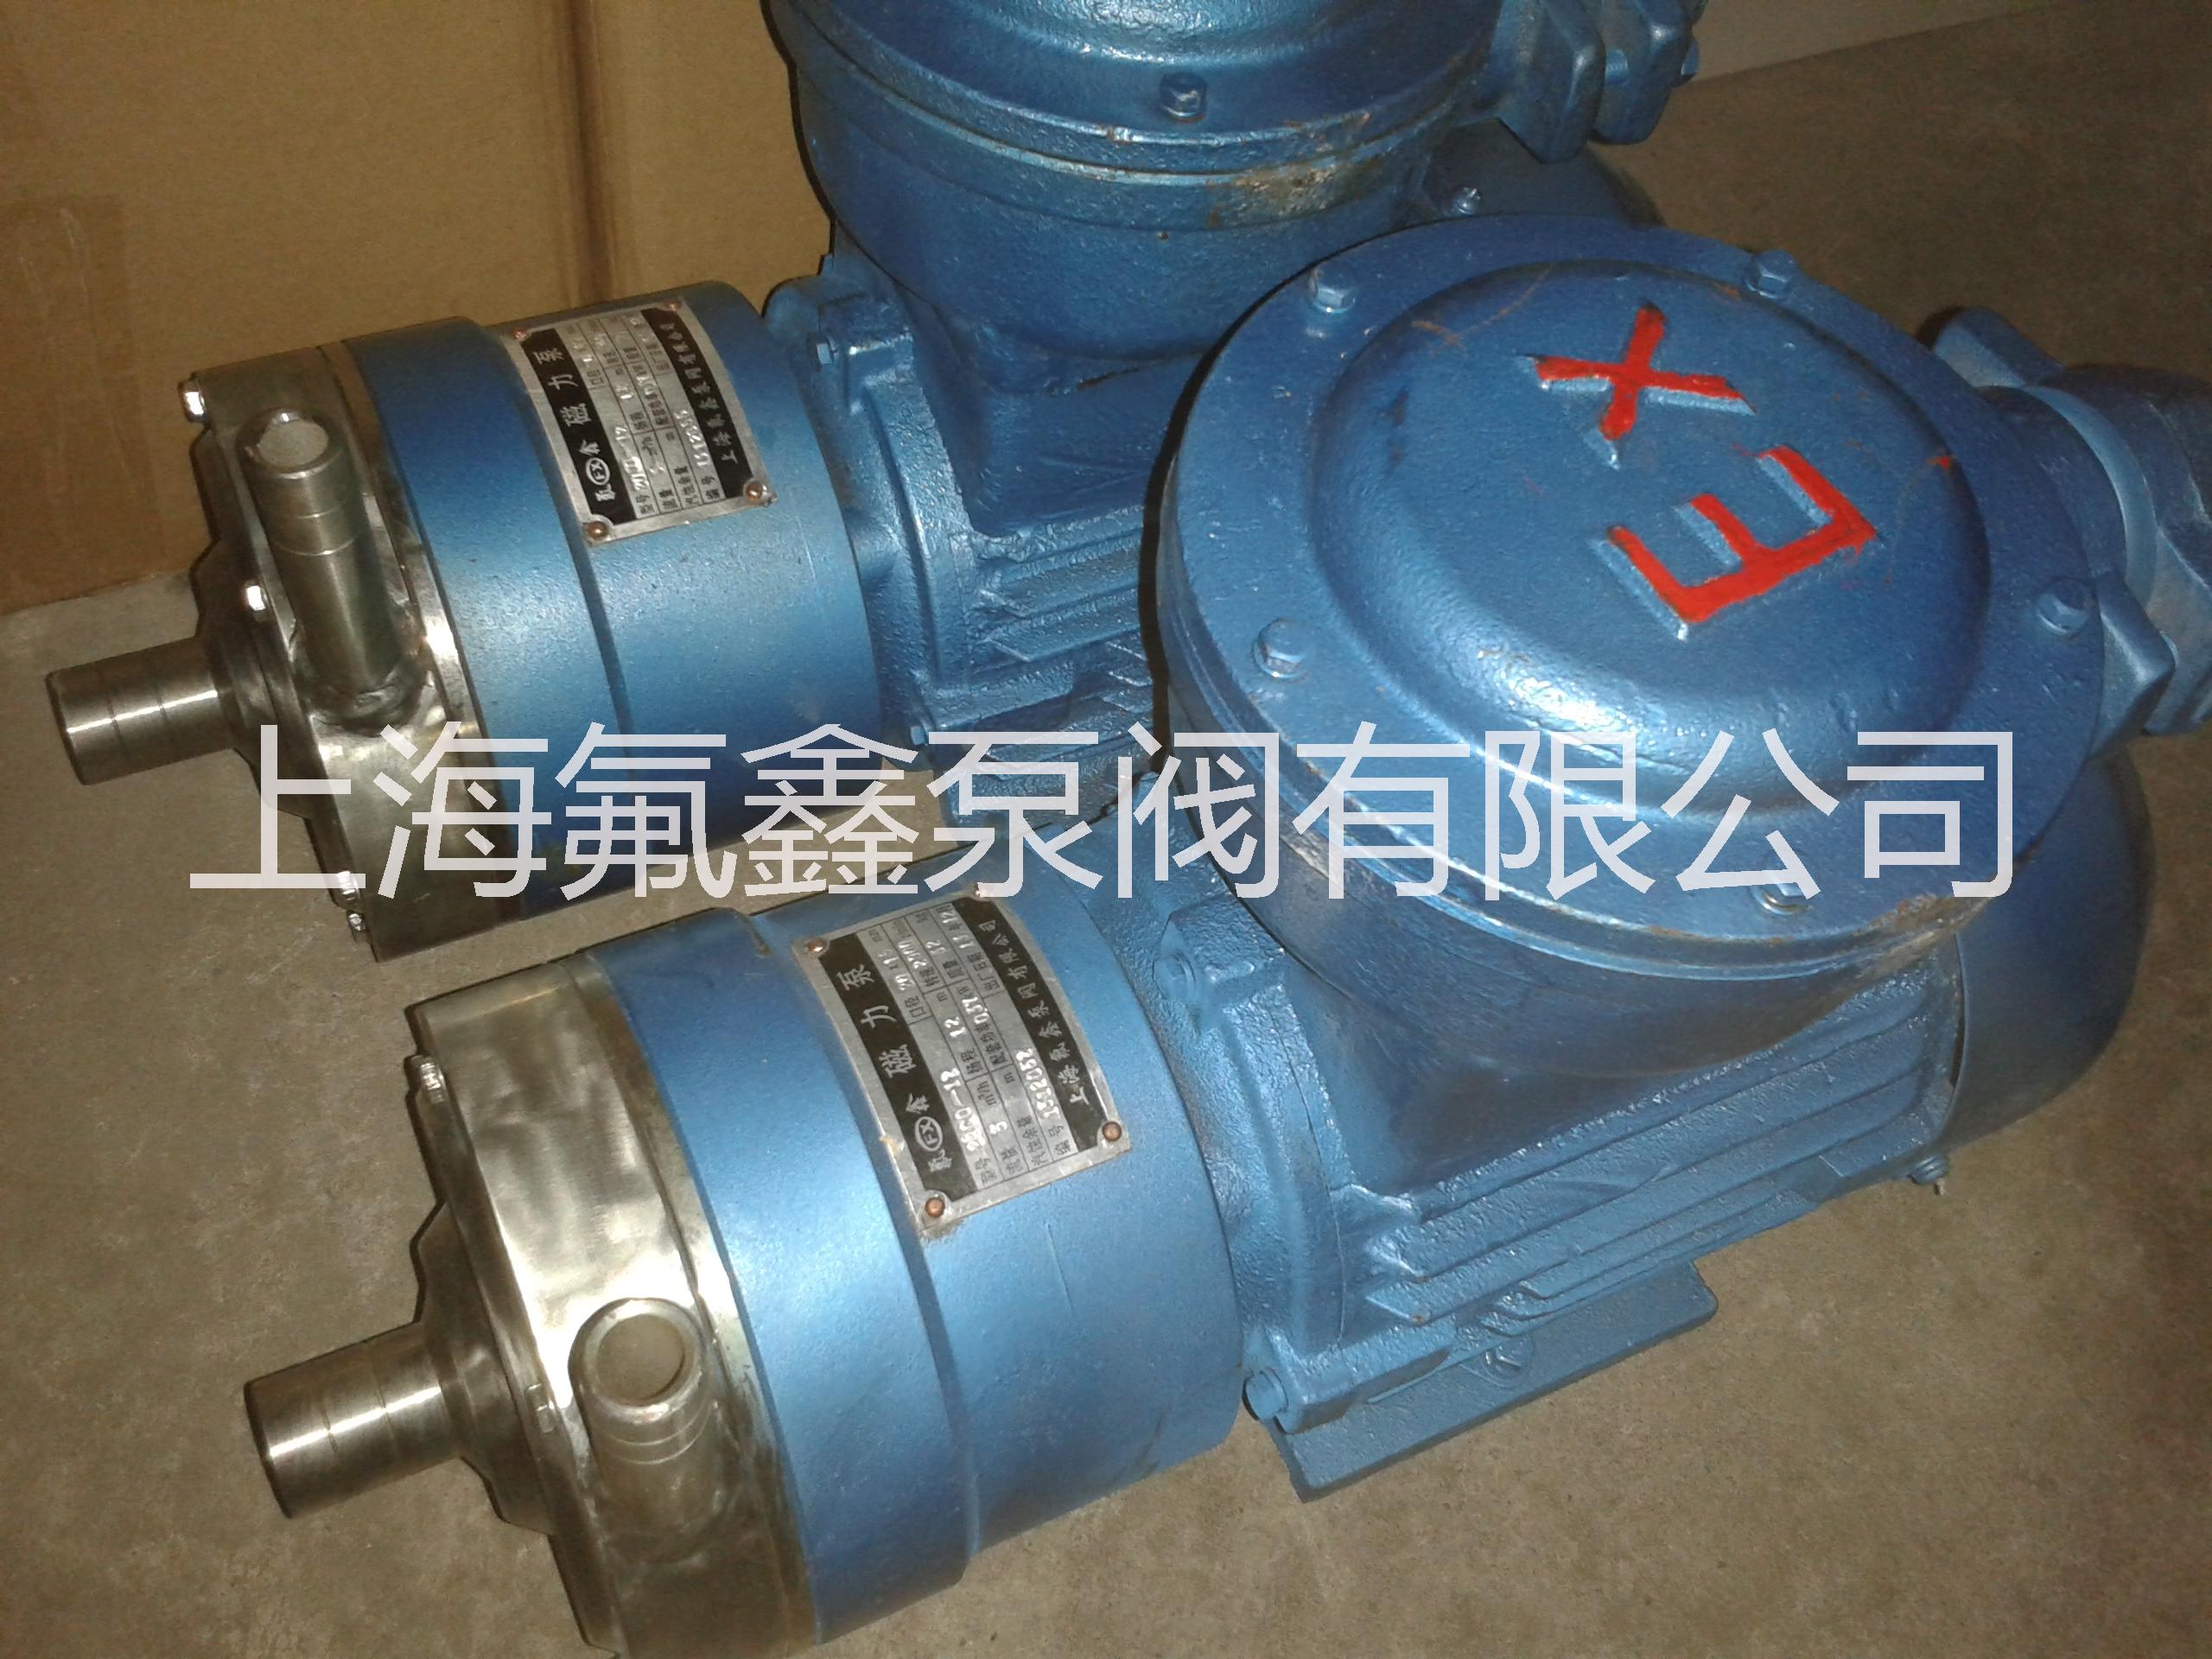 上海不锈钢磁力泵磁力泵 不锈钢磁力泵 CQ不锈钢磁力泵 上海不锈钢磁力泵